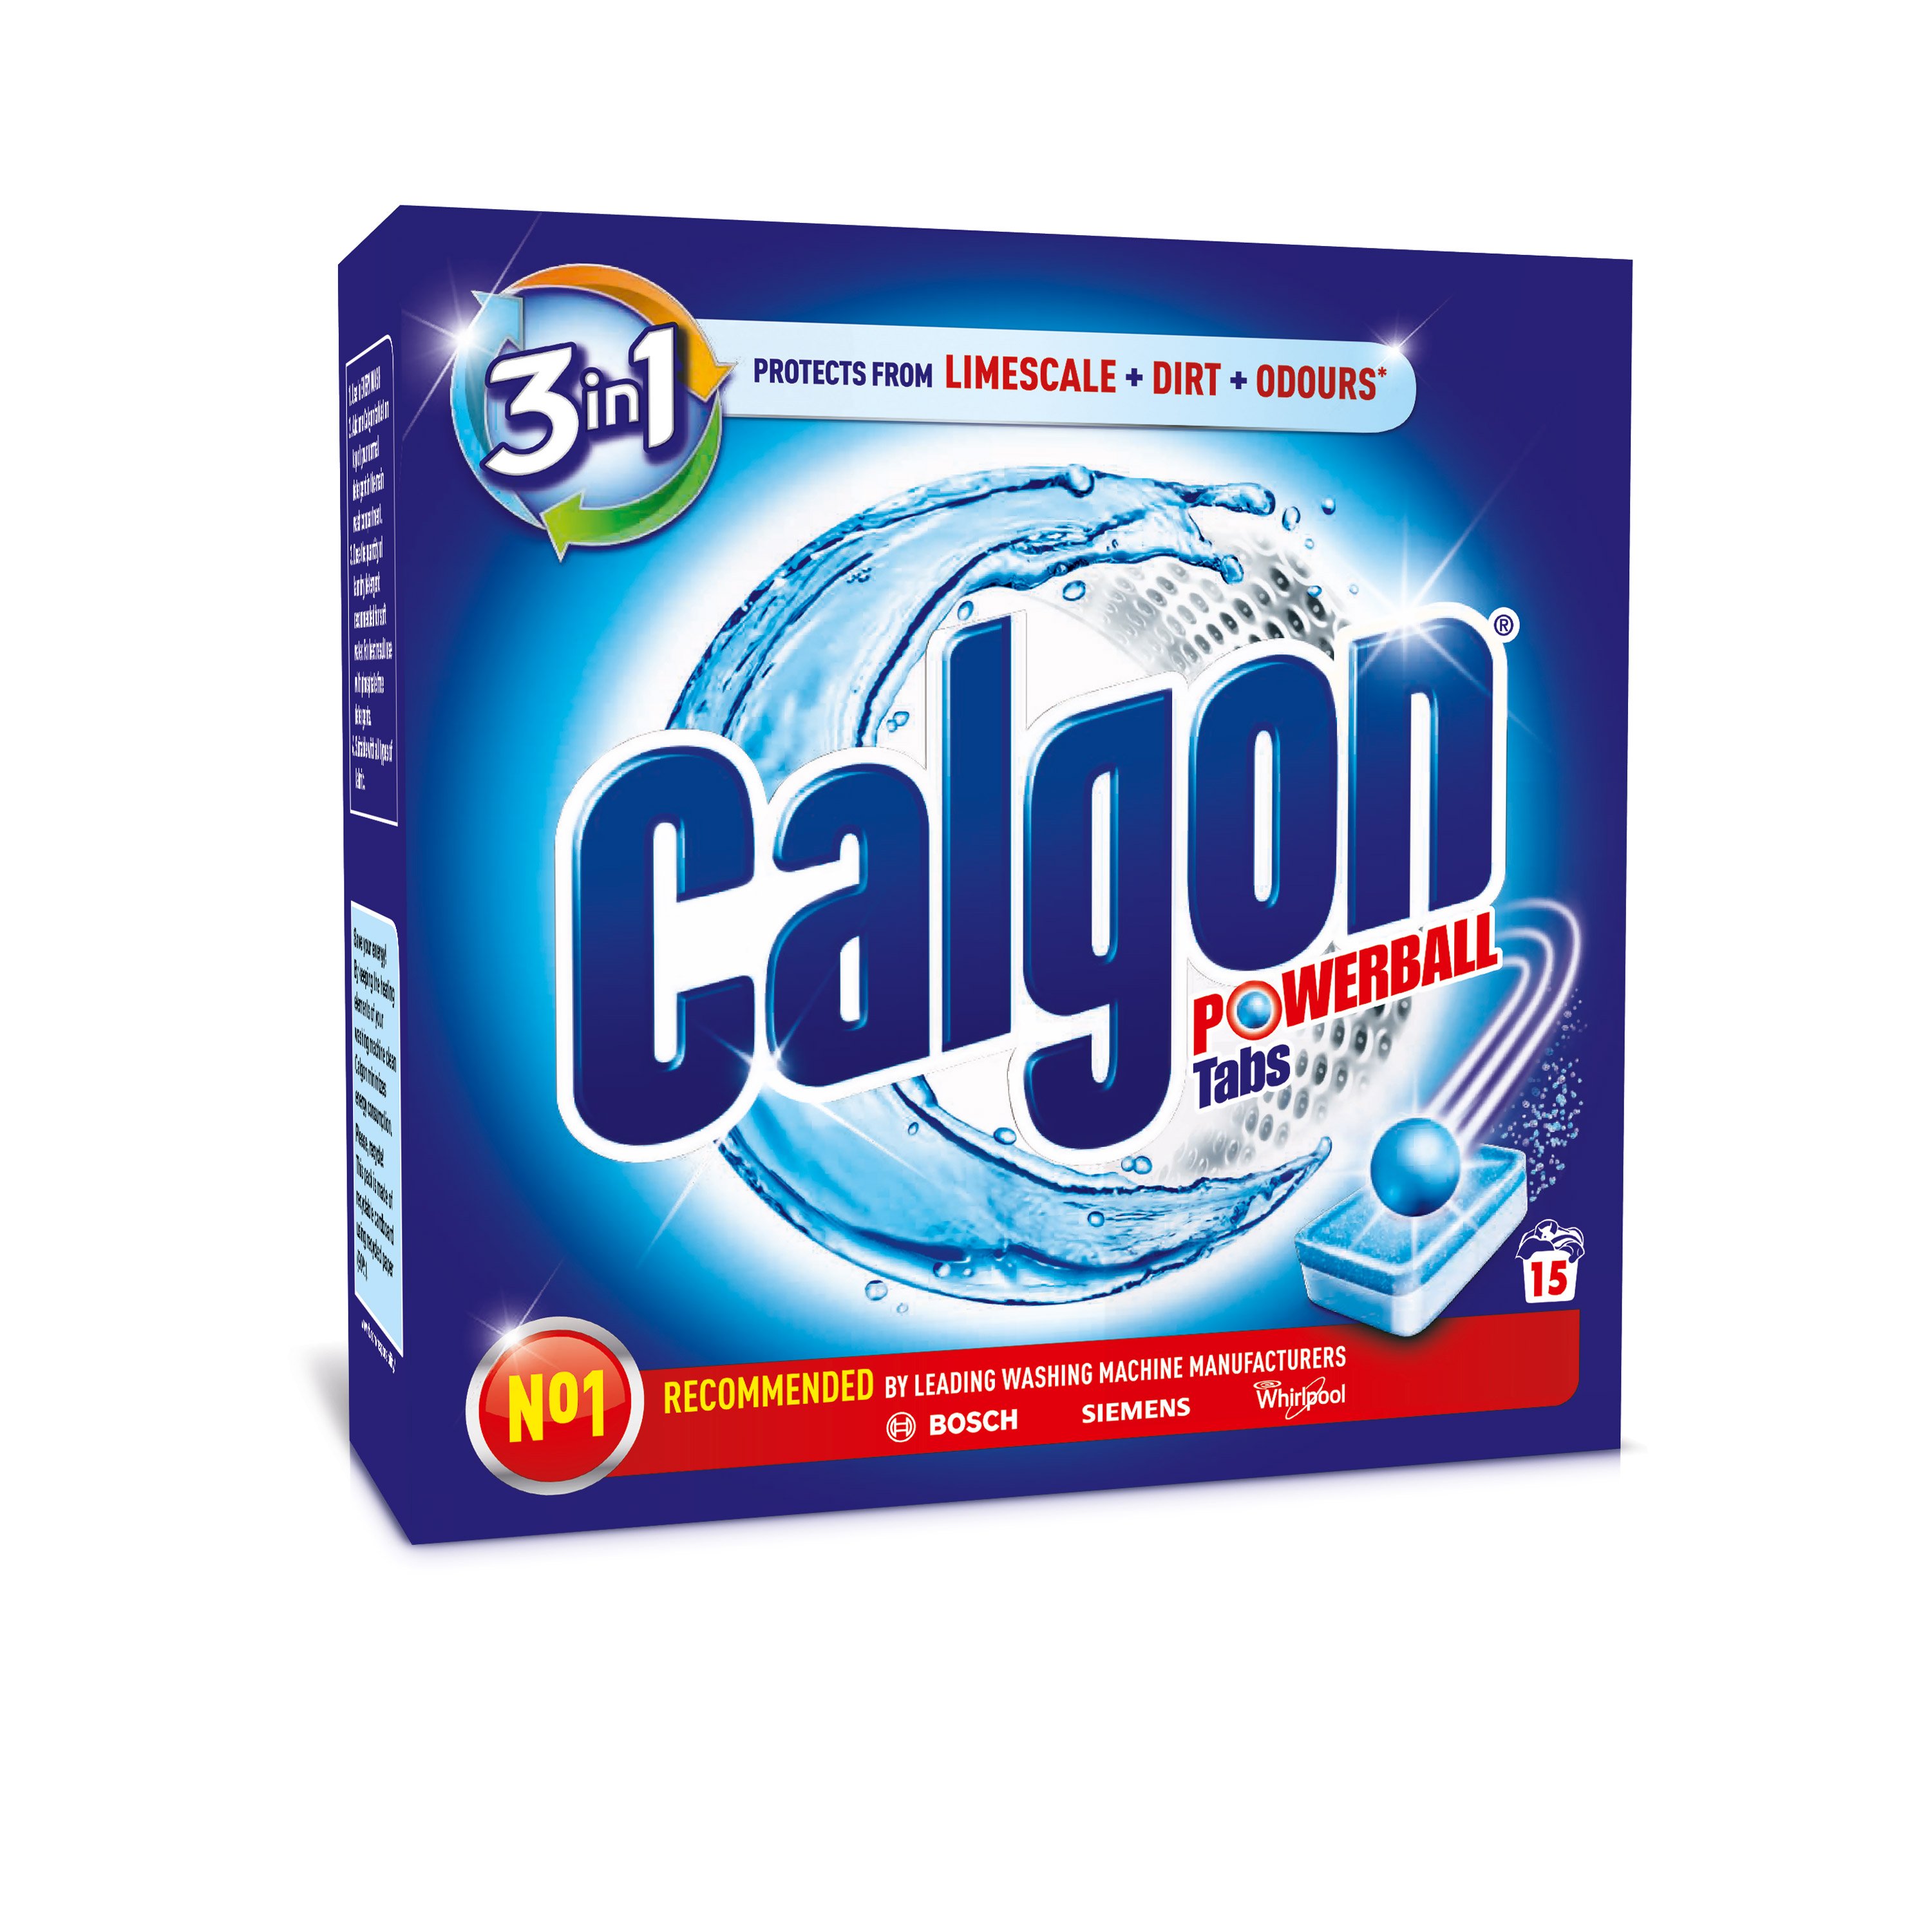 Засіб для пом'якшення води та запобігання утворення накипу в пральних машинах Calgon Powerball 3 в 1, 15 шт. - фото 1